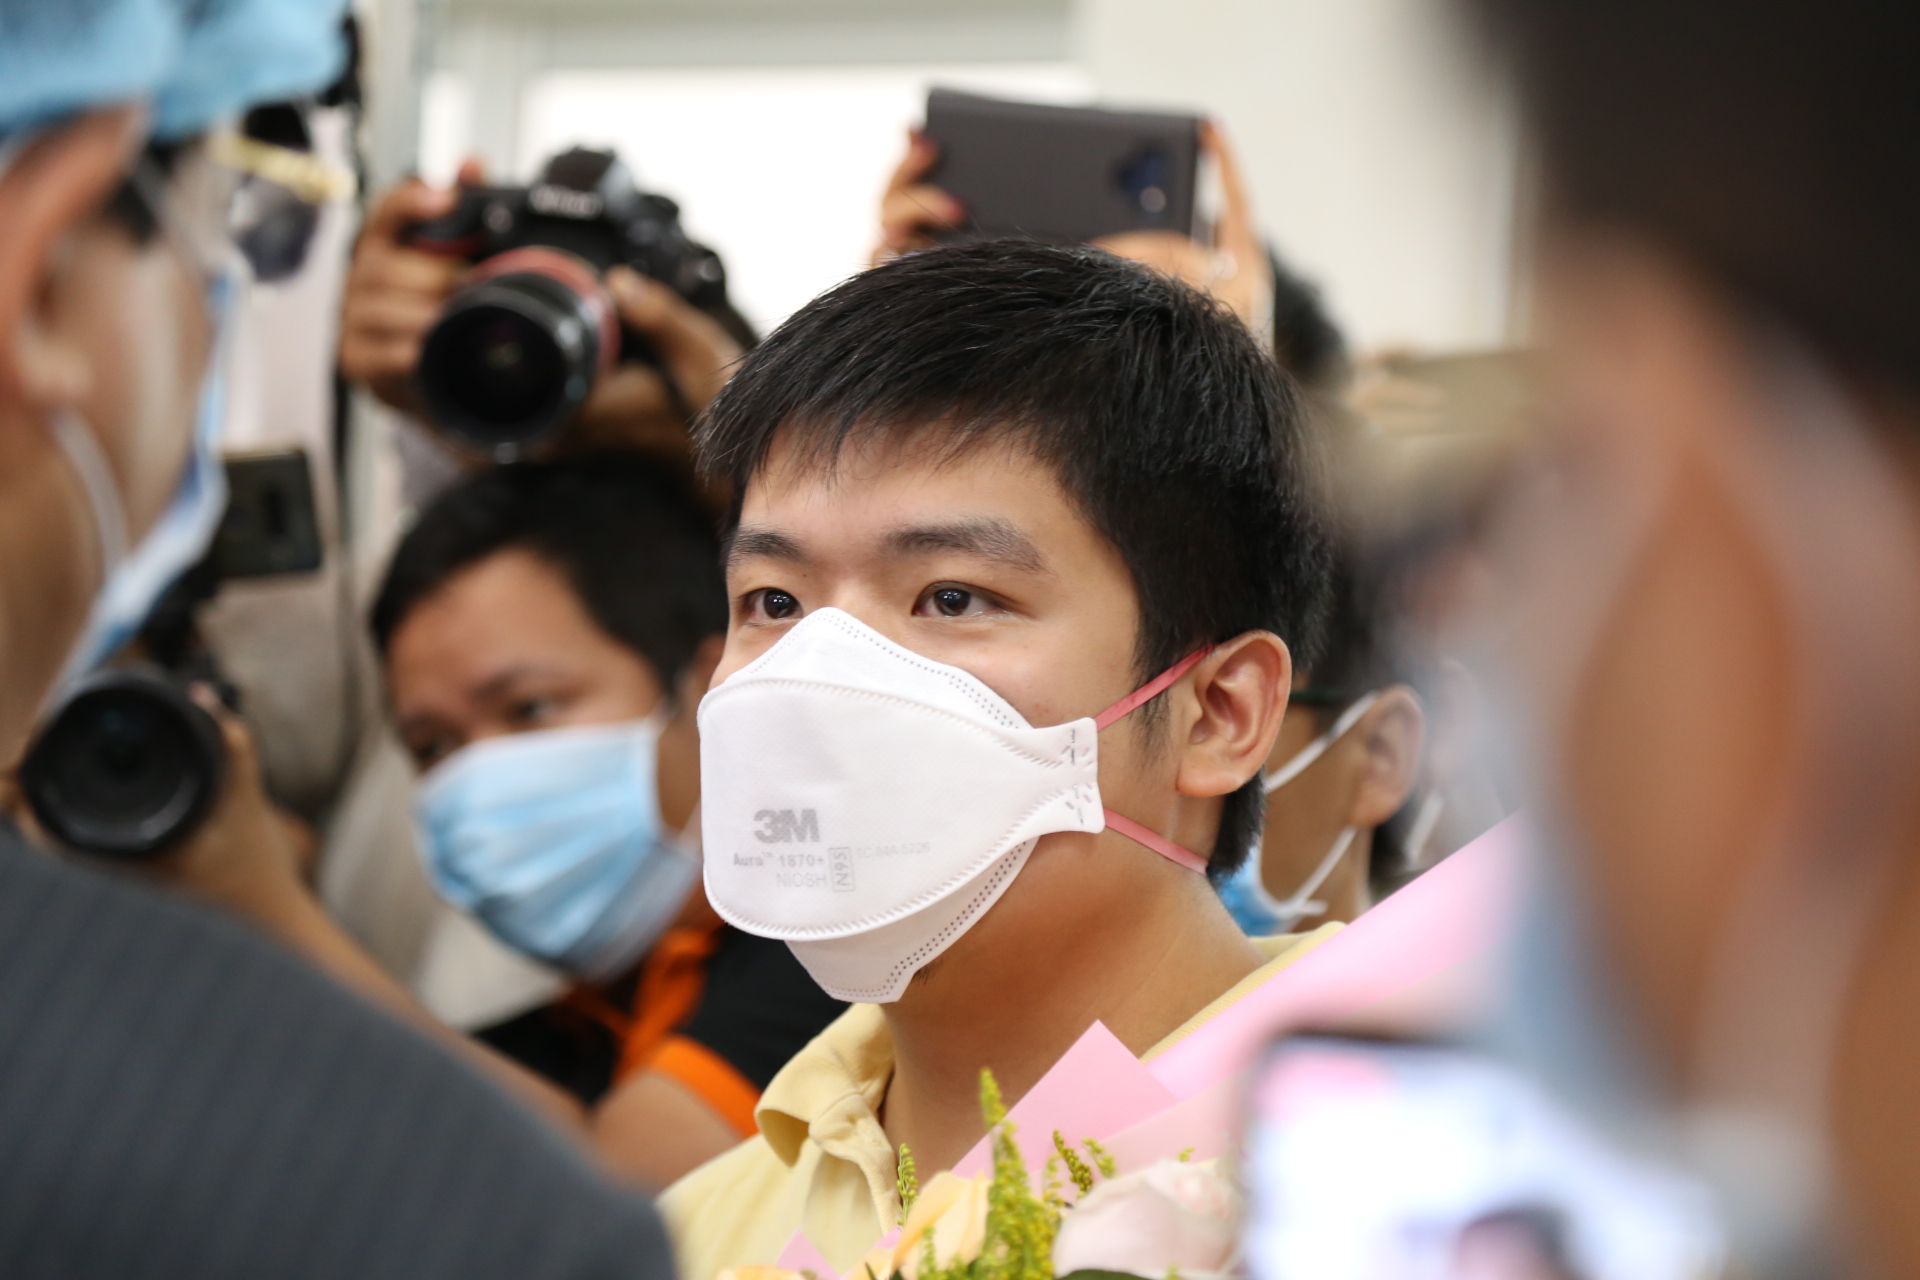 Anh Li Zichao được xuất viện từ sáng 4/2, nhưng anh muốn ở lại Bệnh viện Chợ Rẫy chăm sóc cha.